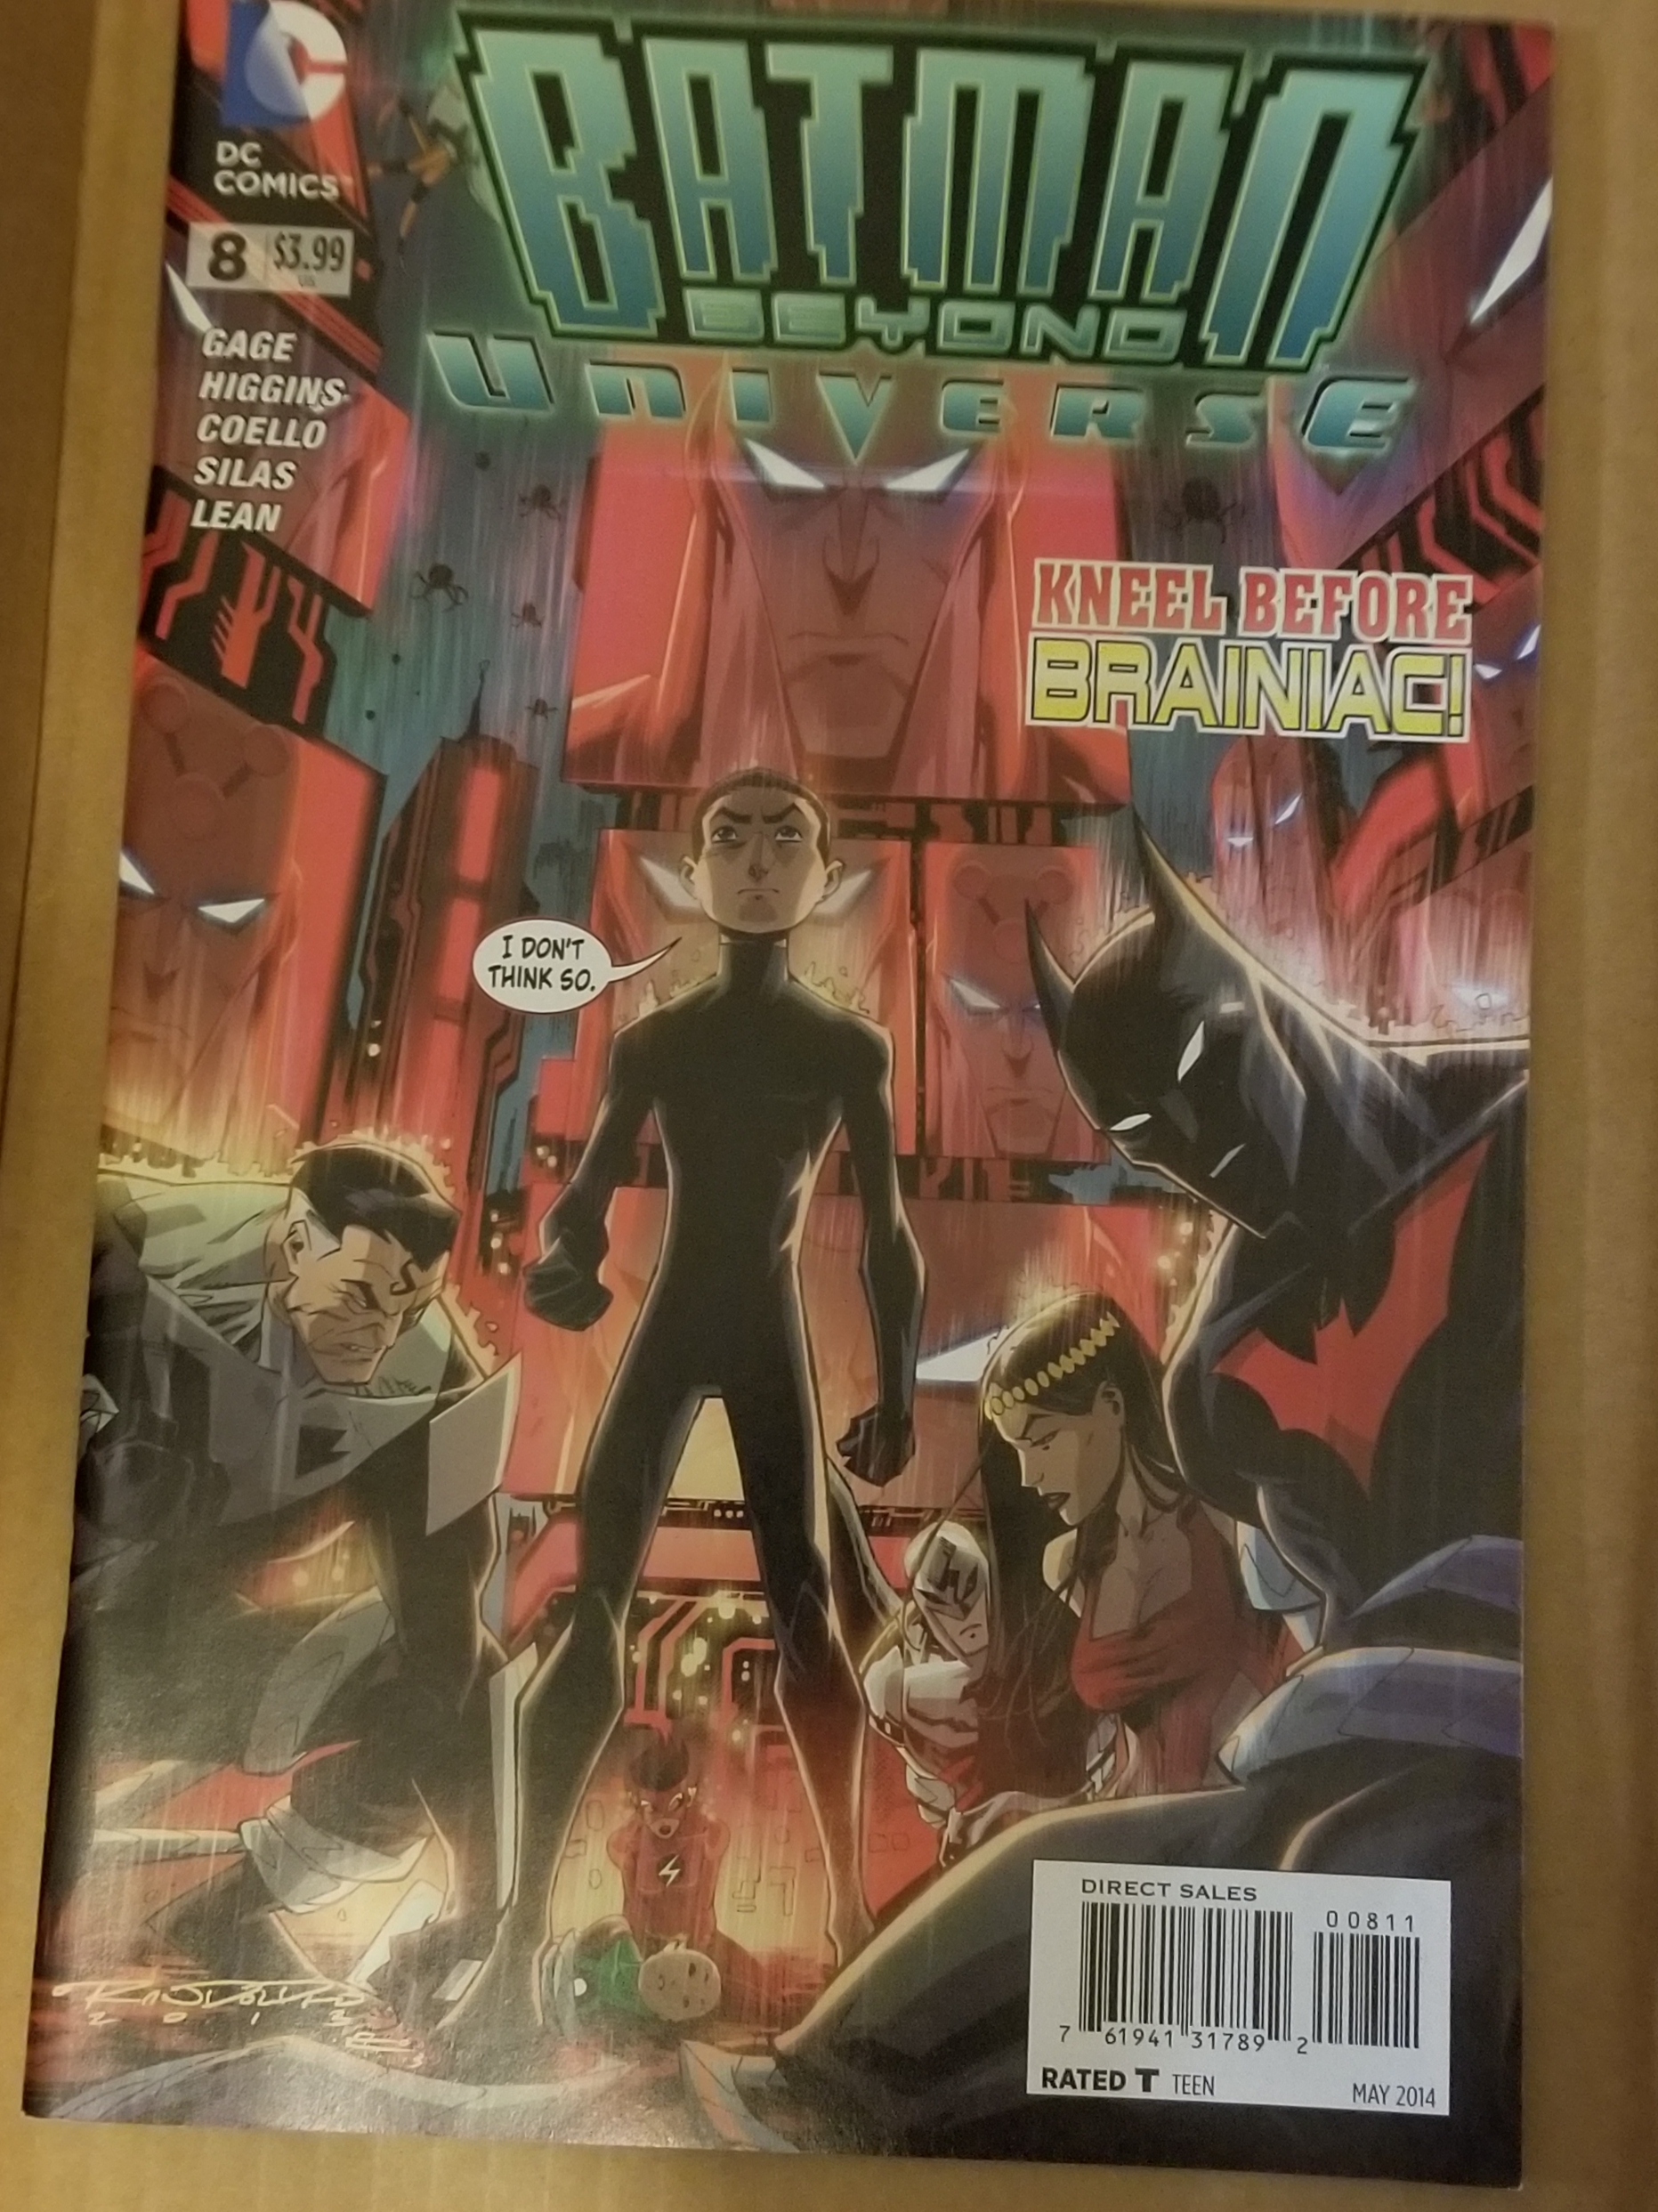 Batman Beyond Universe #8 | Comic Books - Modern Age, DC Comics, Batman,  Superhero / HipComic